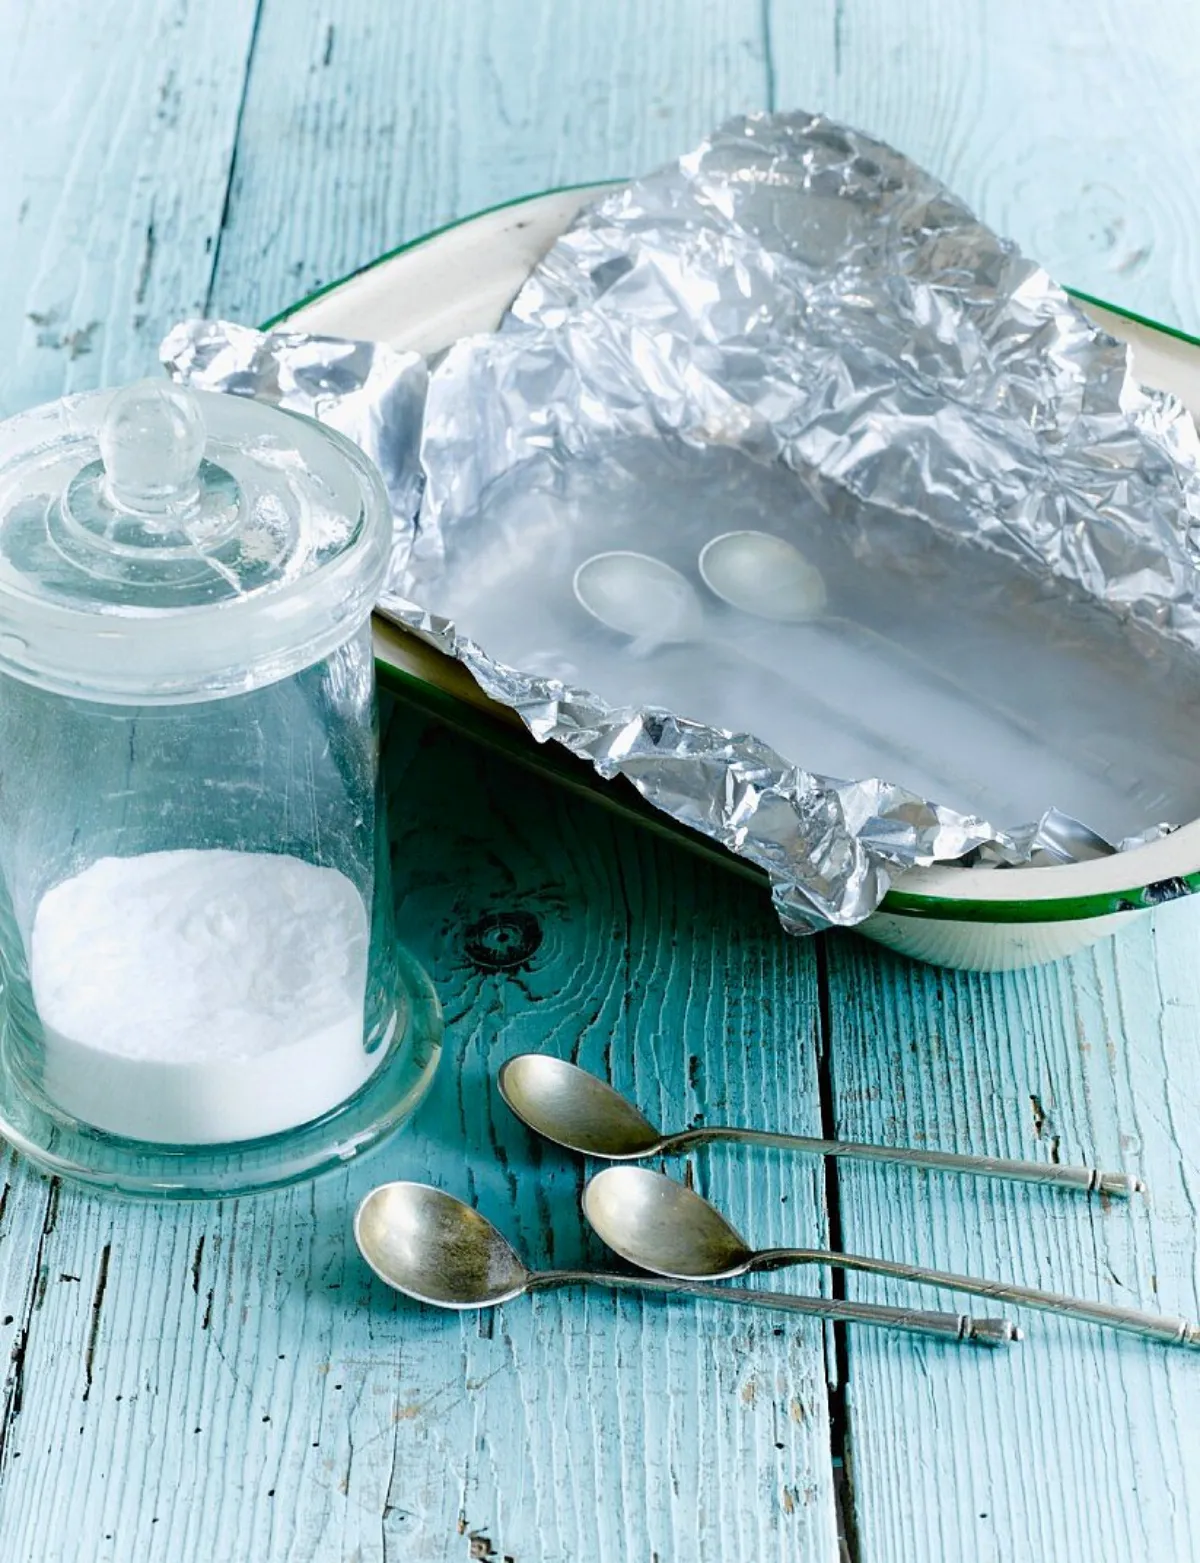 silberbesteck einweichen lösung aus natron und salz